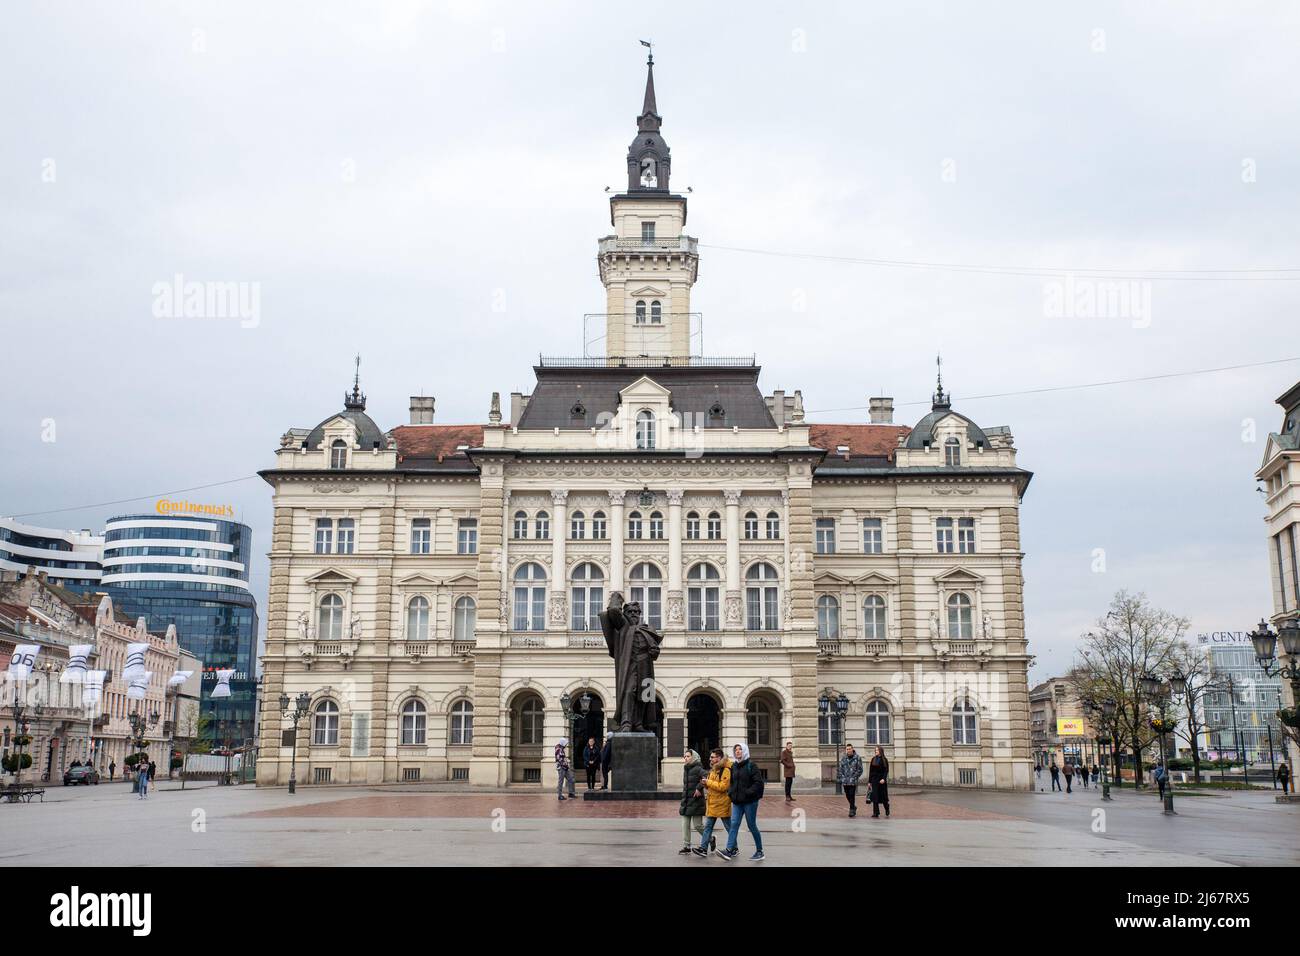 Bild des zentralen Platzes von novi Sad, Serbien, genannt Trg Slobode, mit dem Rathaus im Hintergrund und Passanten und der svetozar mi Stockfoto